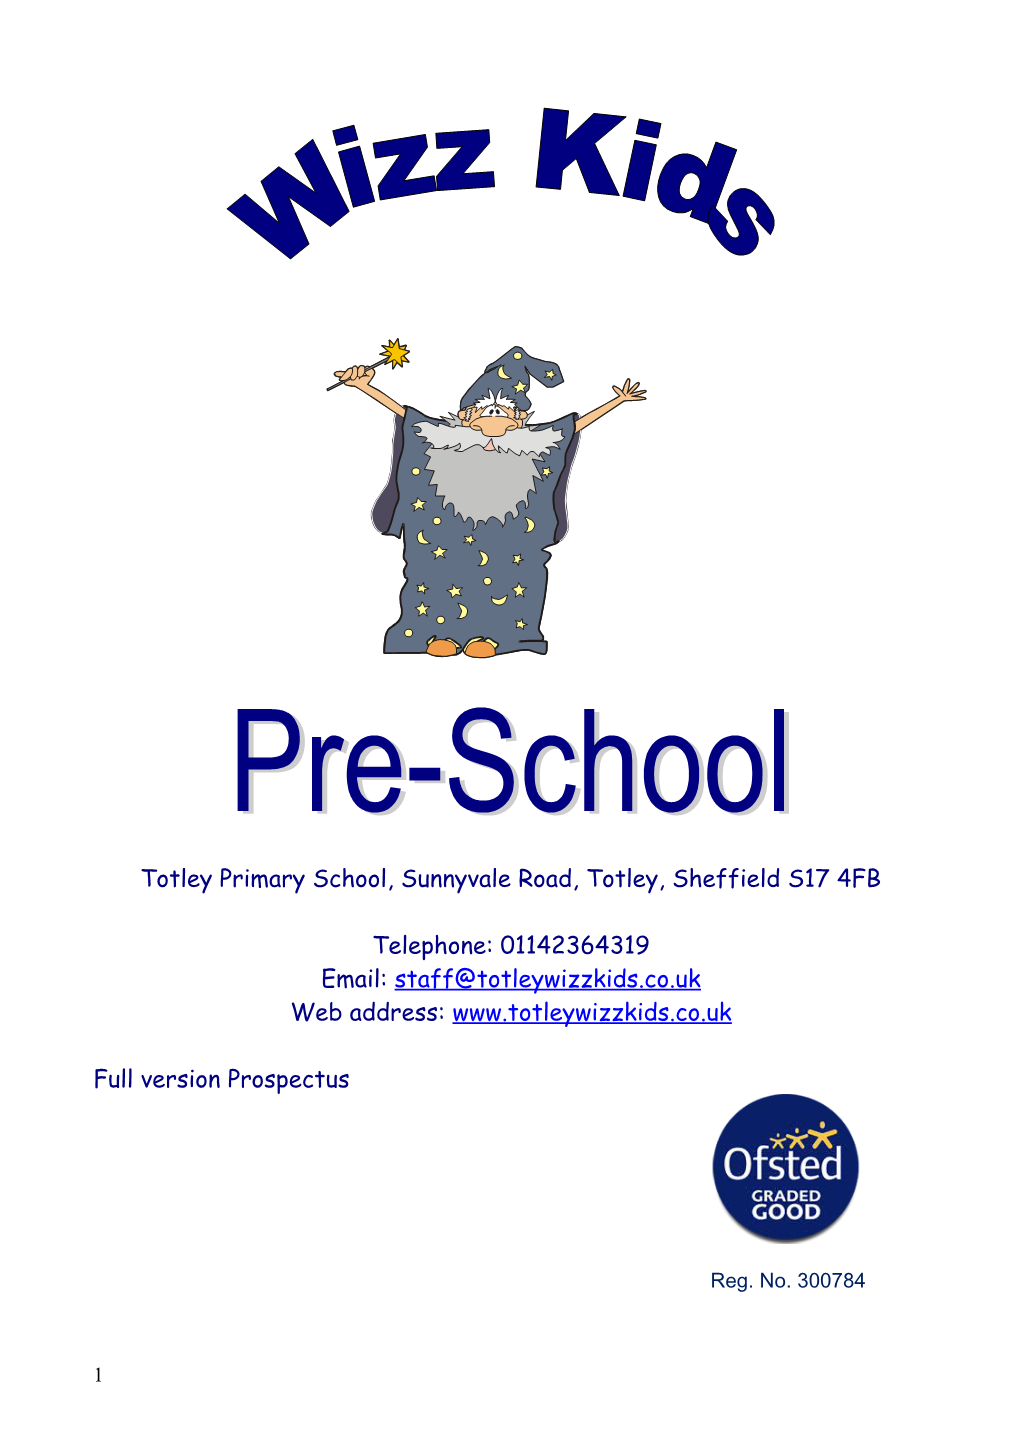 Address: Wizz Kids, Totley Primary School, Totley, Sheffield, S17 4FB